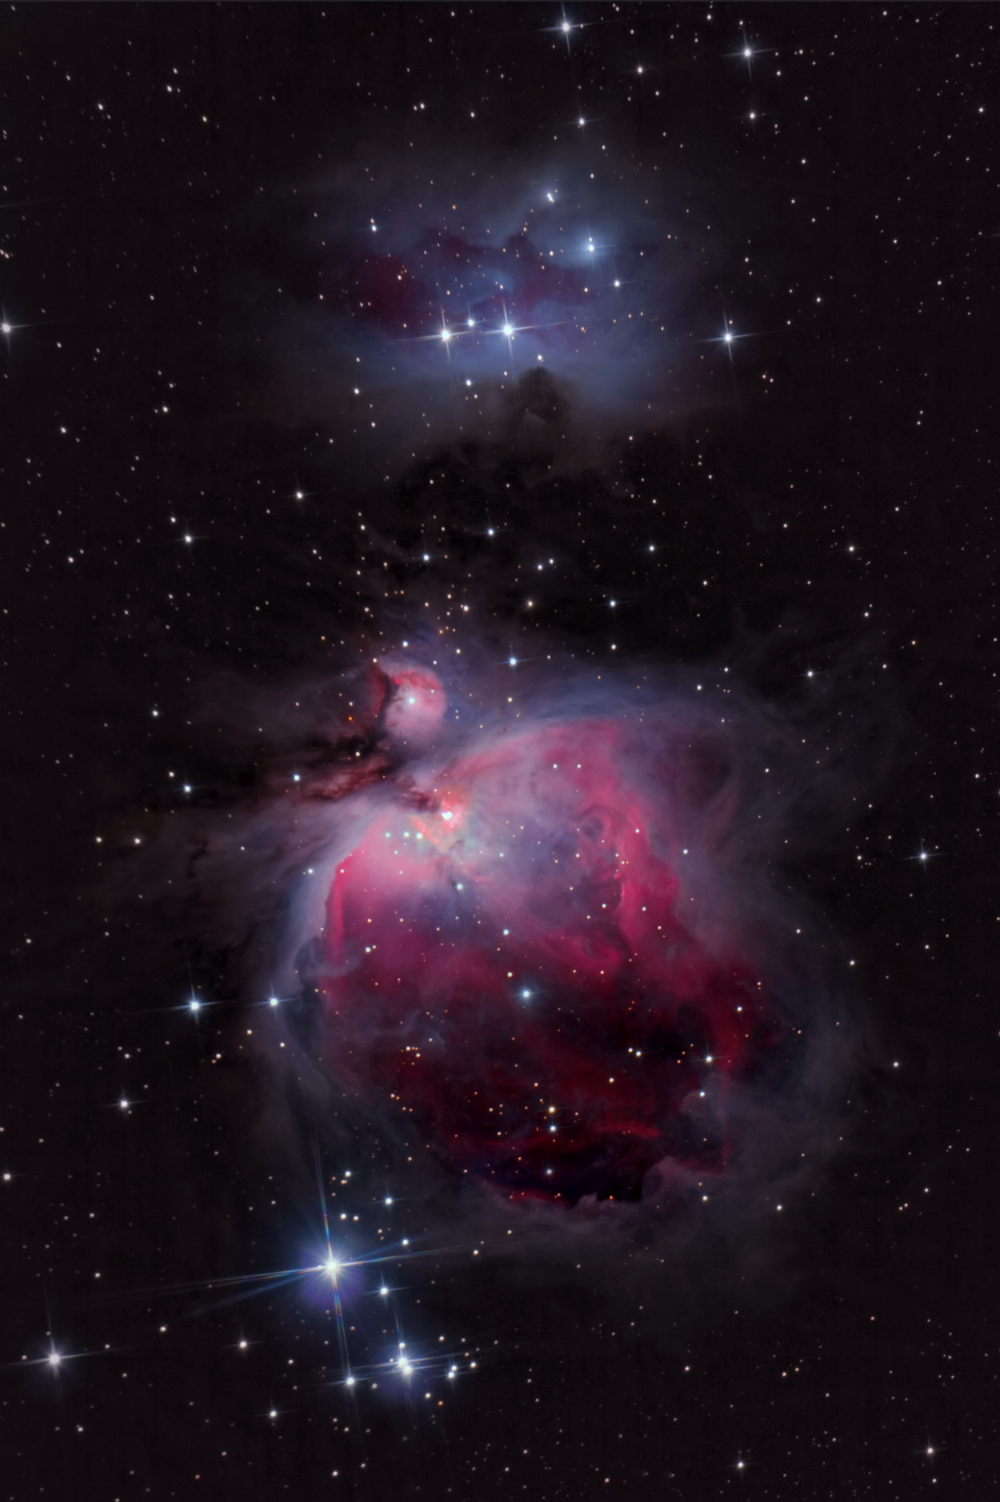 Диффузная туманность М42 или Большая Туманность Ориона и NGC1977 "Running man" (Бегущий человек).